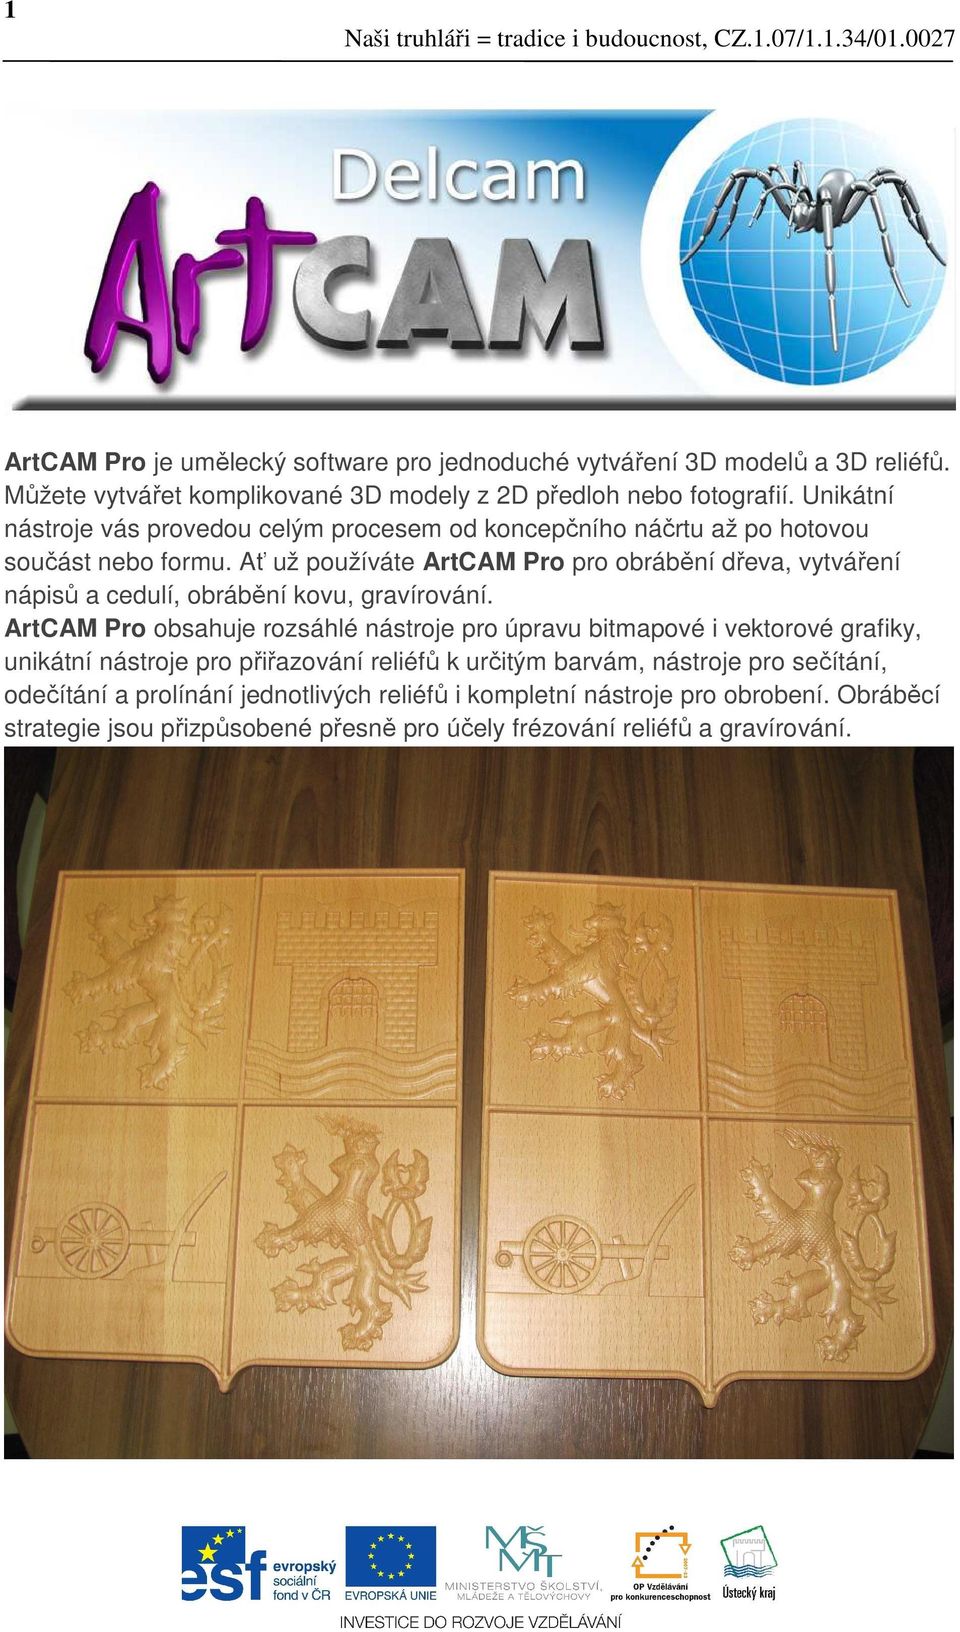 Ať už používáte ArtCAM Pro pro obrábění dřeva, vytváření nápisů a cedulí, obrábění kovu, gravírování.